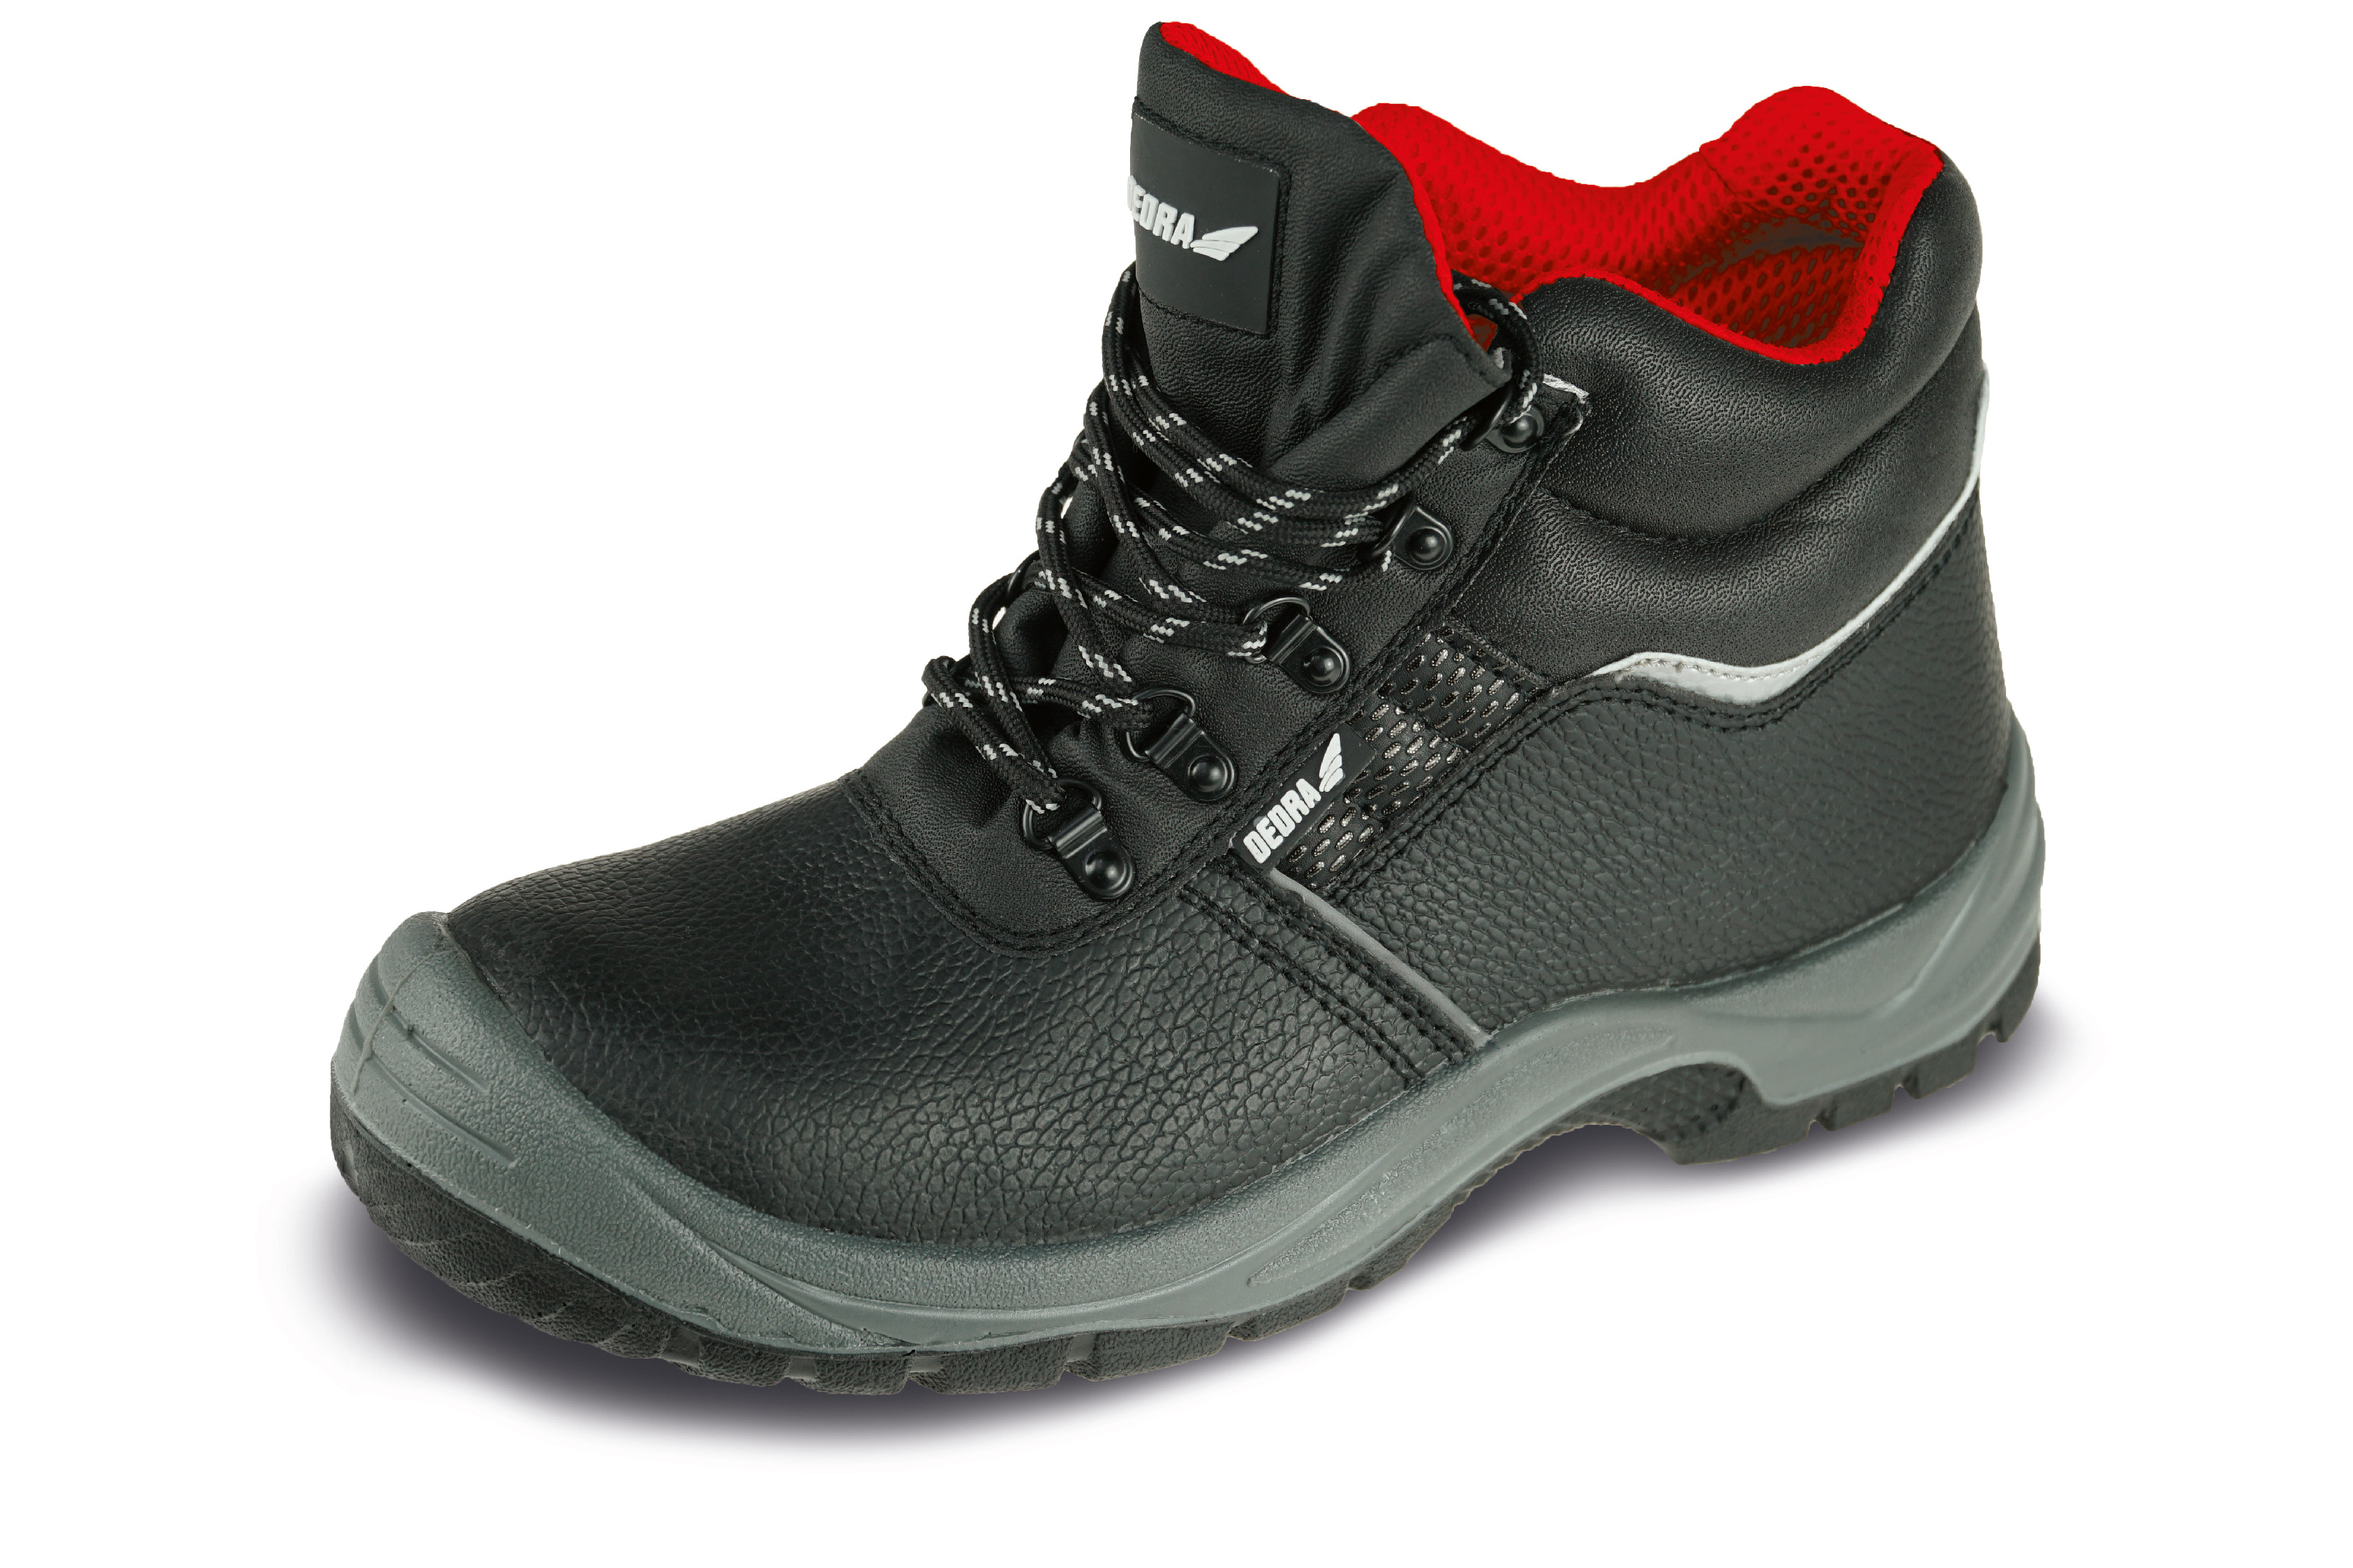 Bezpečnostní boty T1AW, kožené, velikost: 45, kat. S3 SRC DEDRA BH9T1AW-45 + Dárek, servis bez starostí v hodnotě 300Kč